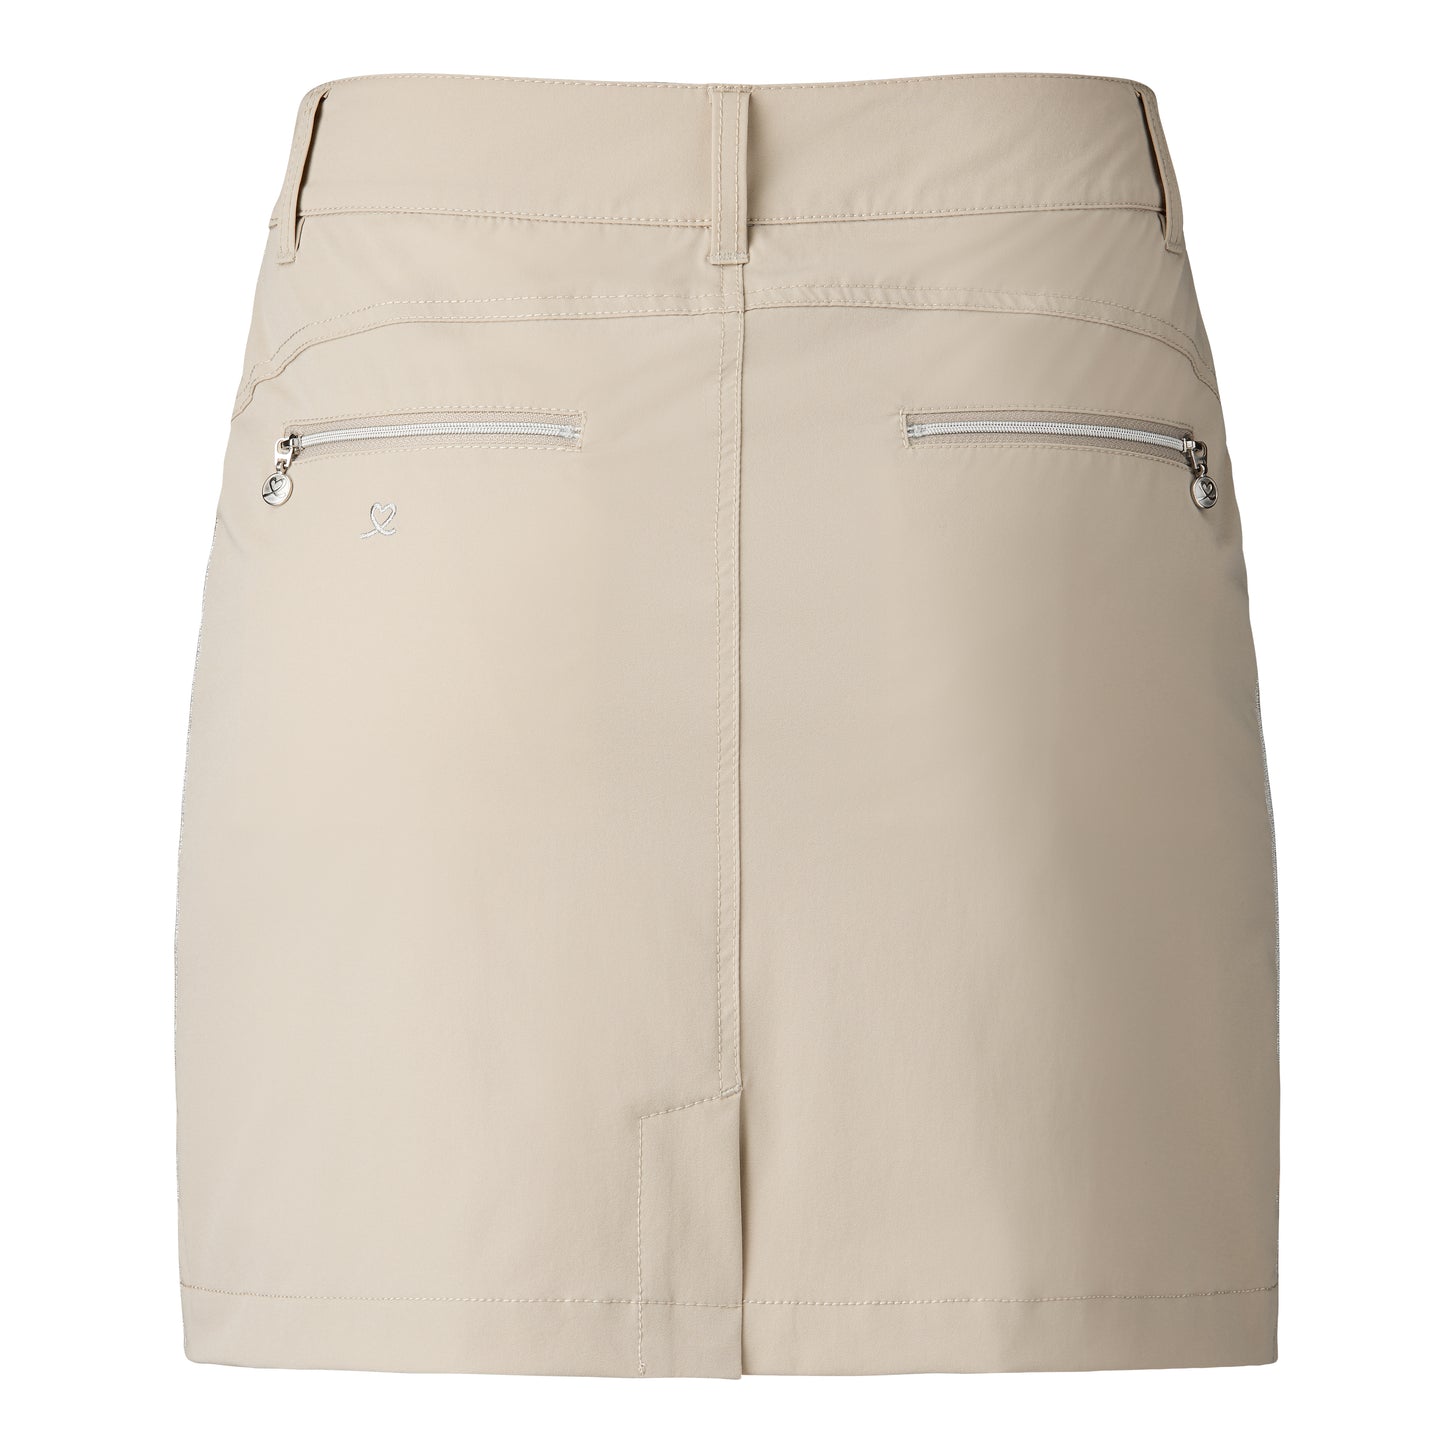 Glam skirt pants 45 cm